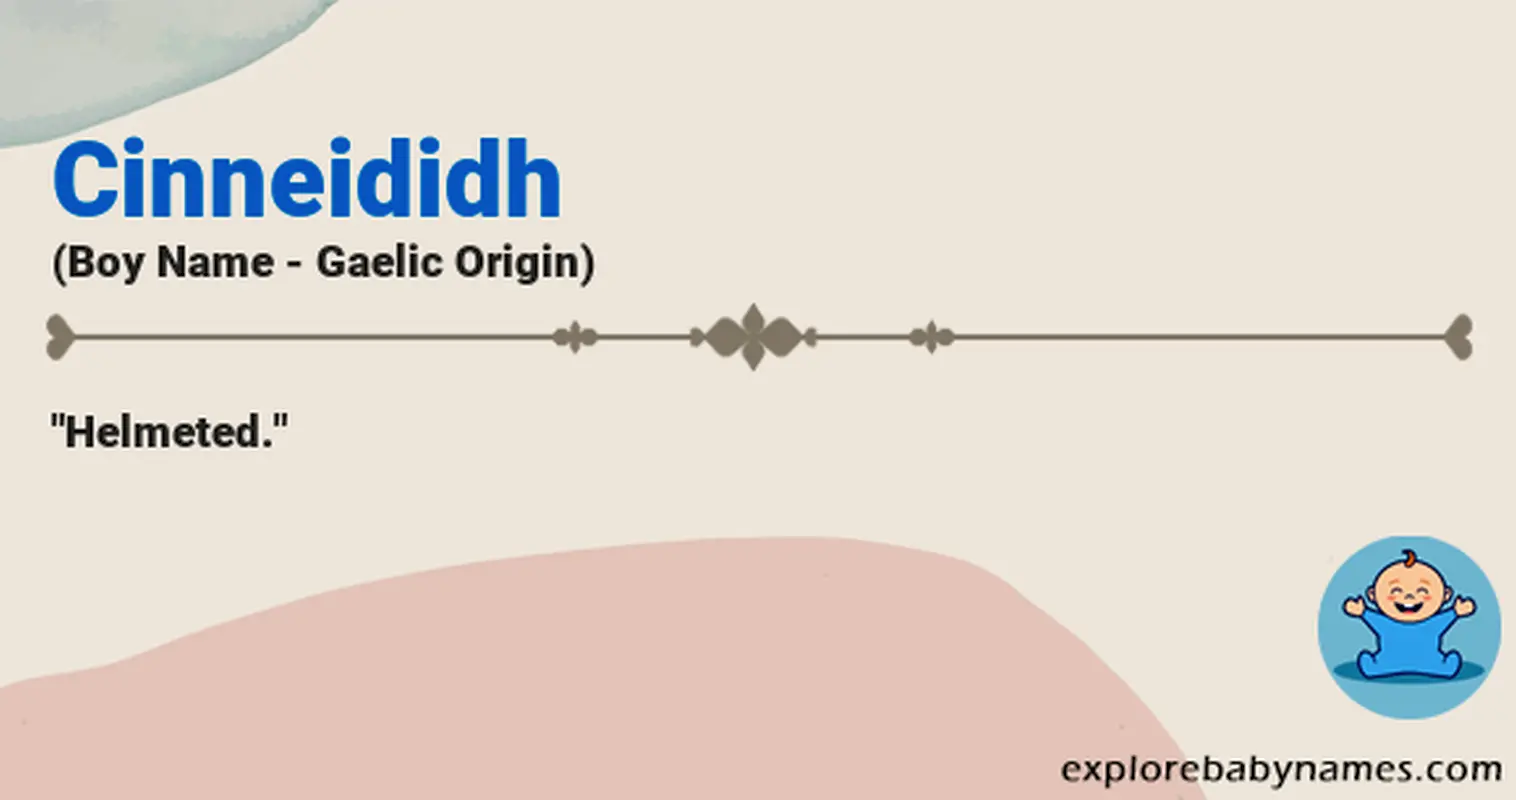 Meaning of Cinneididh